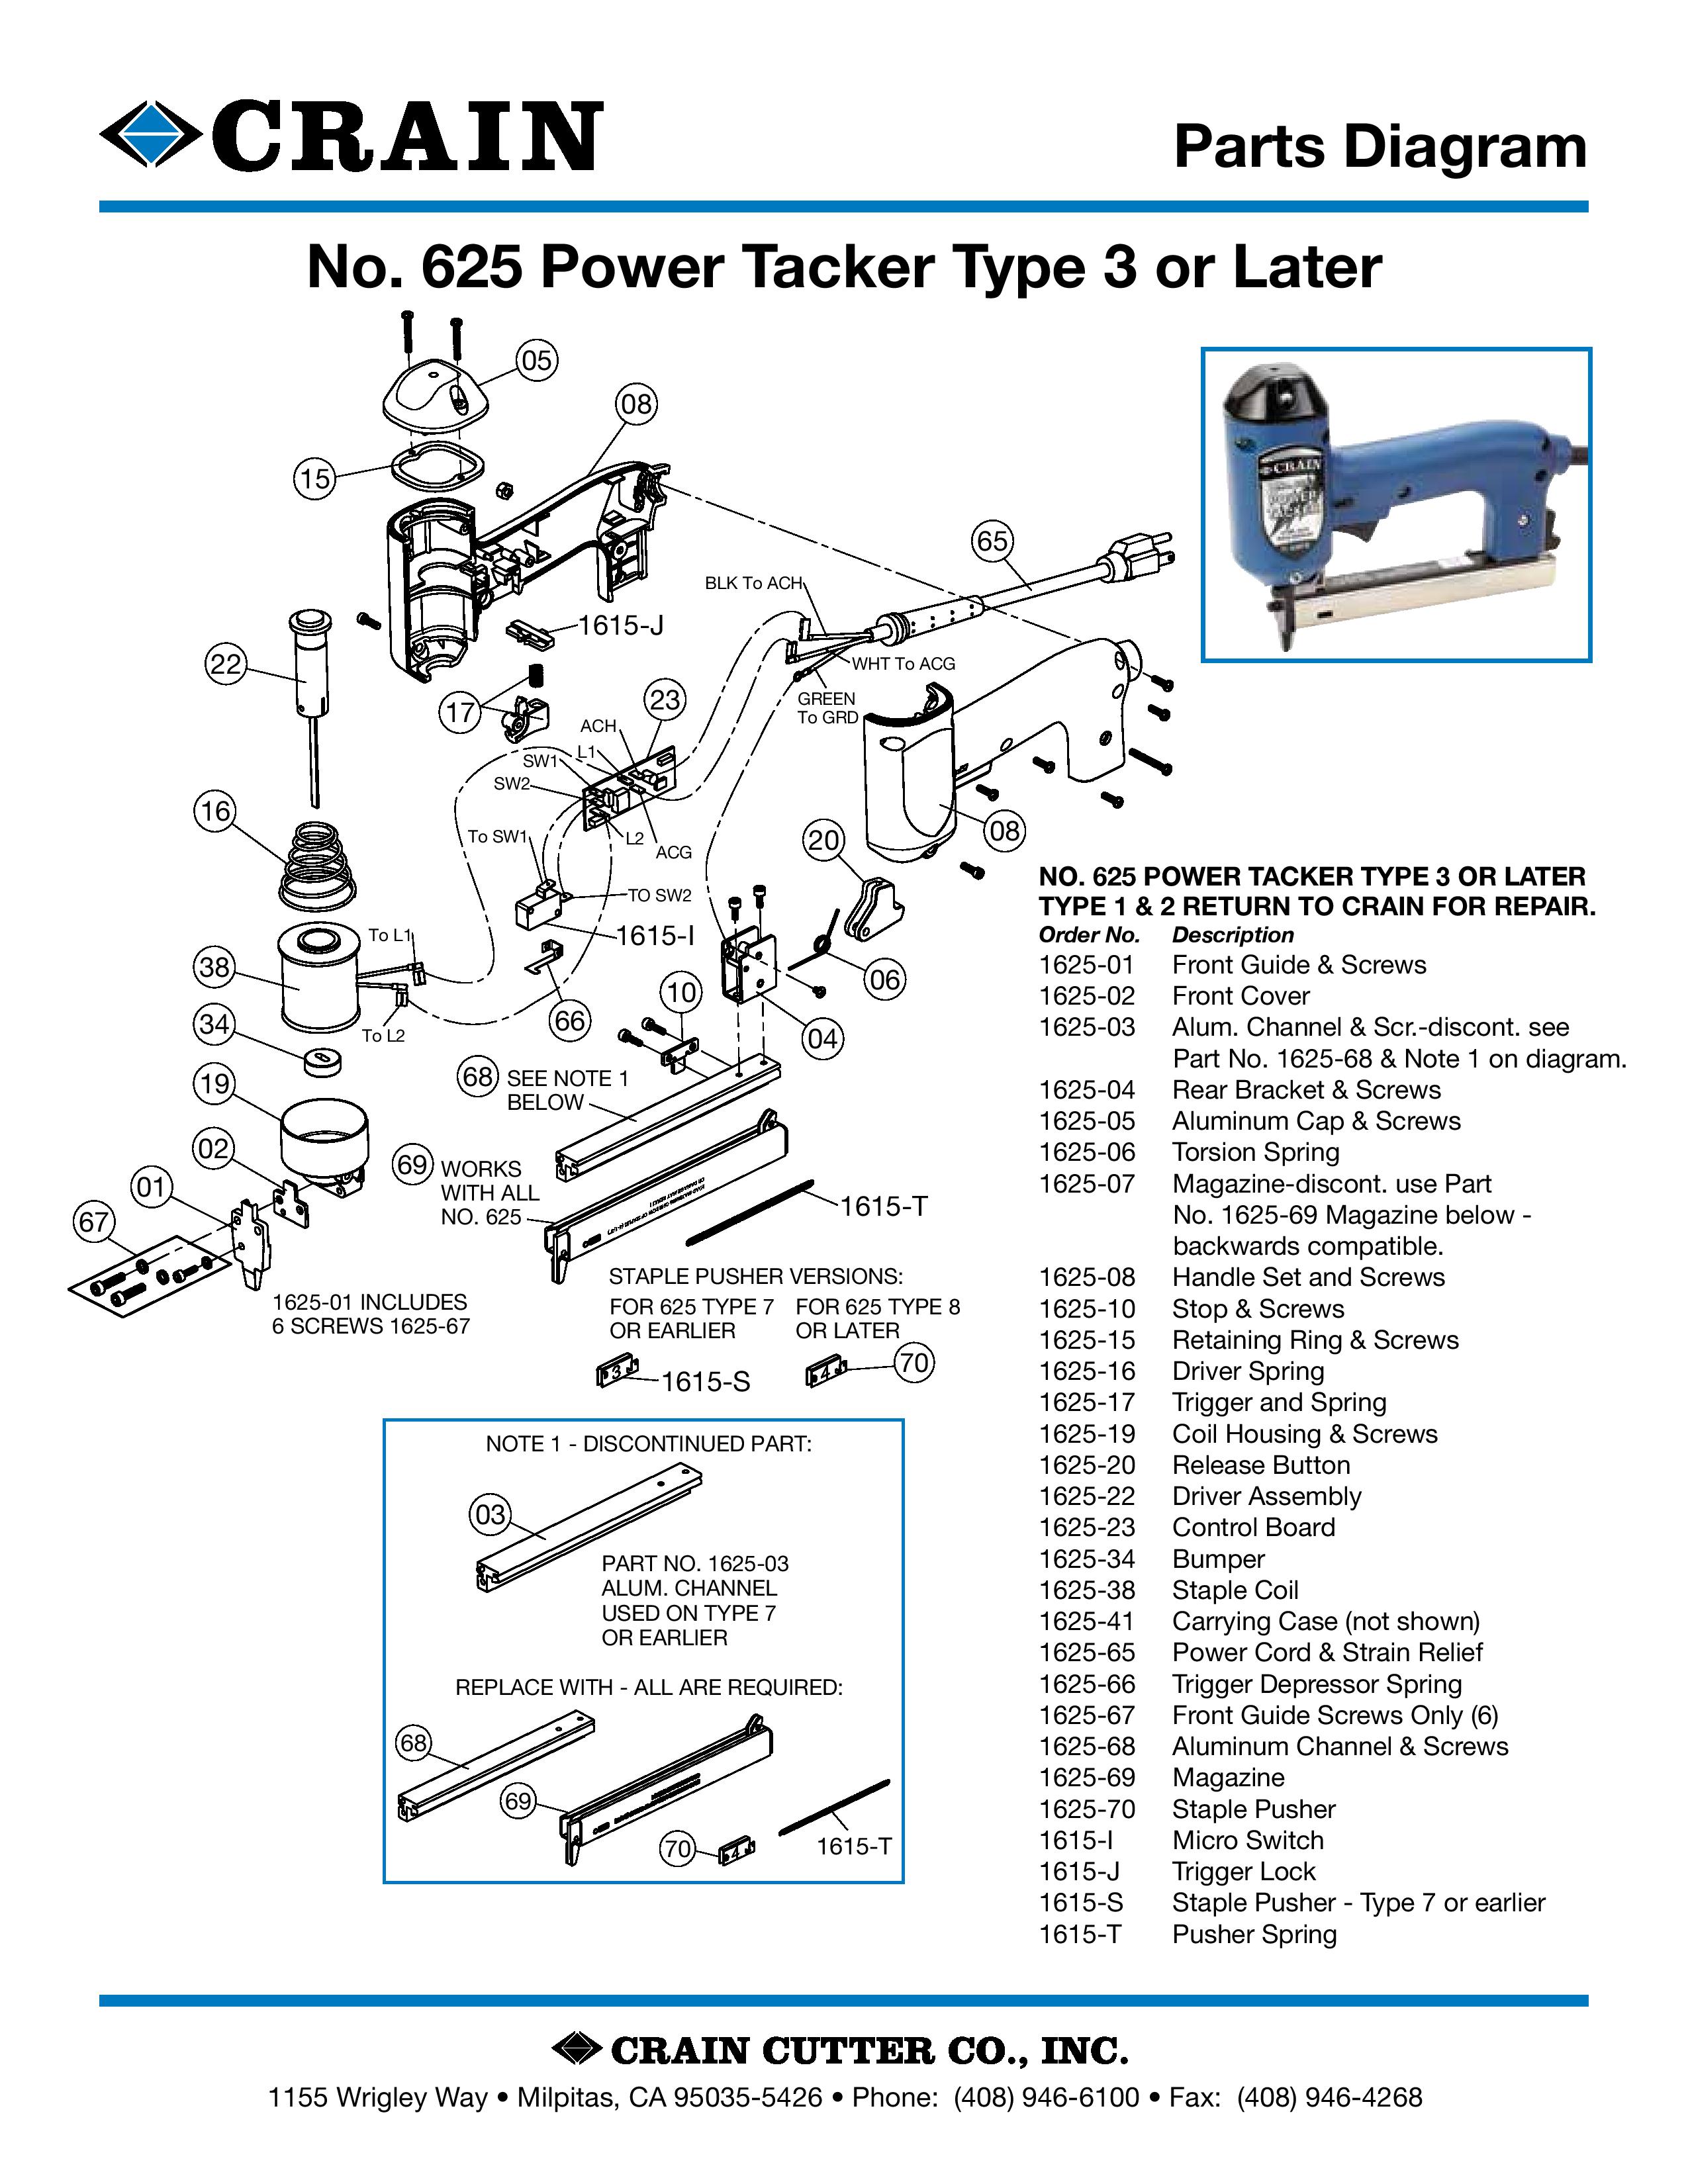 625 Power Tacker